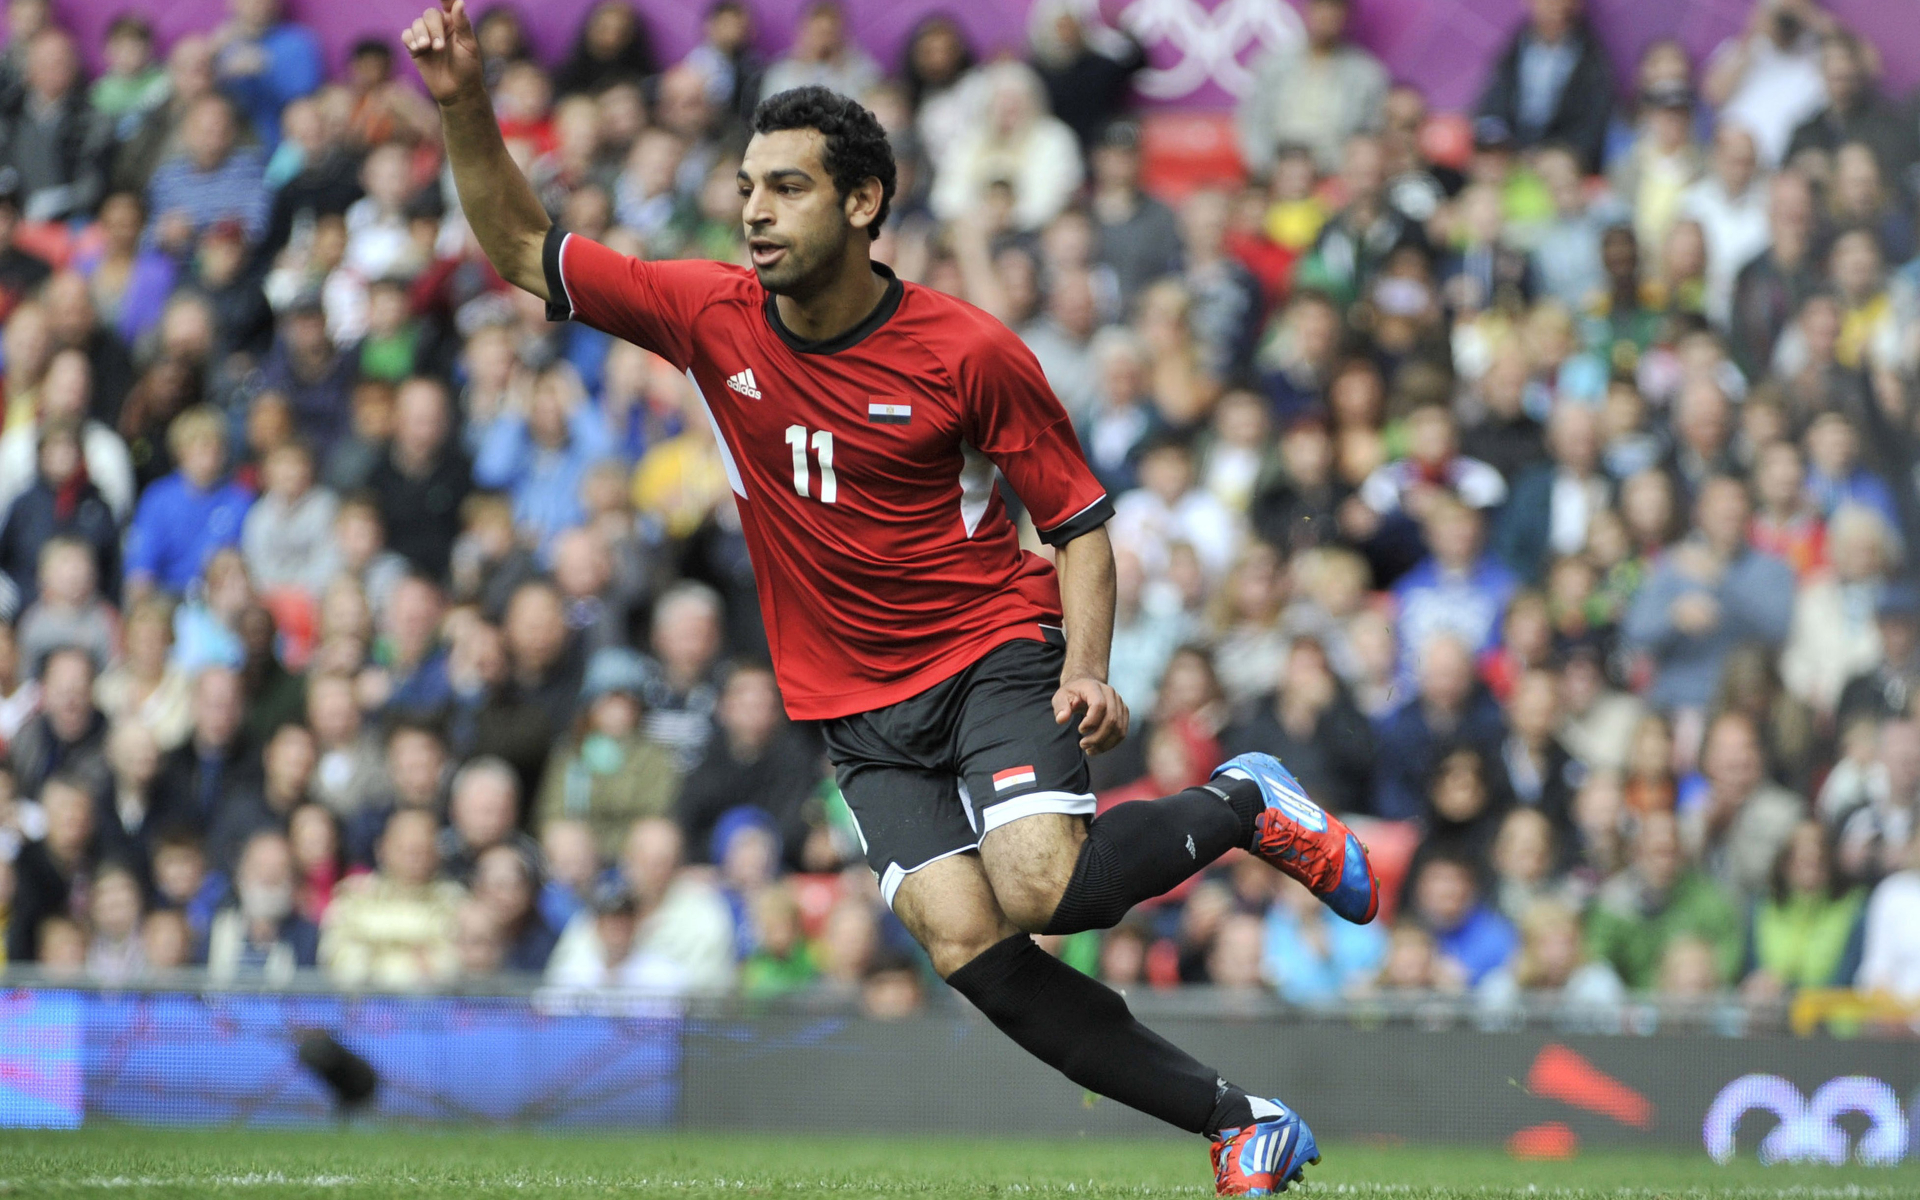 Скачать обои Сборная Египта По Футболу на телефон бесплатно